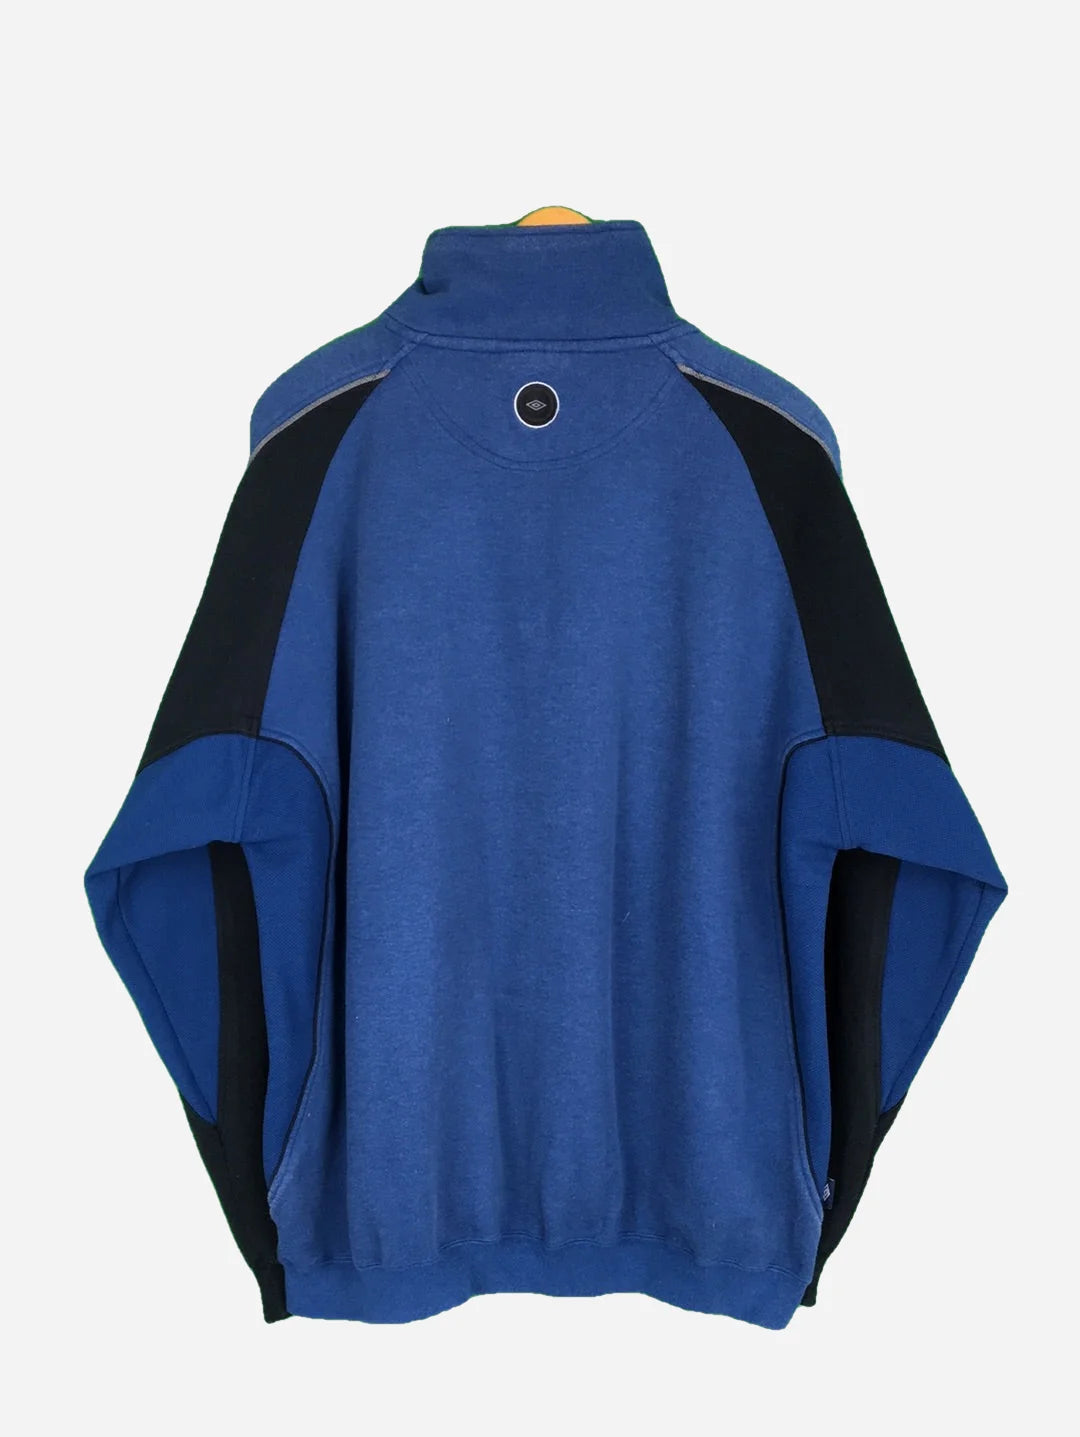 Umbro Zip Sweater (XL)